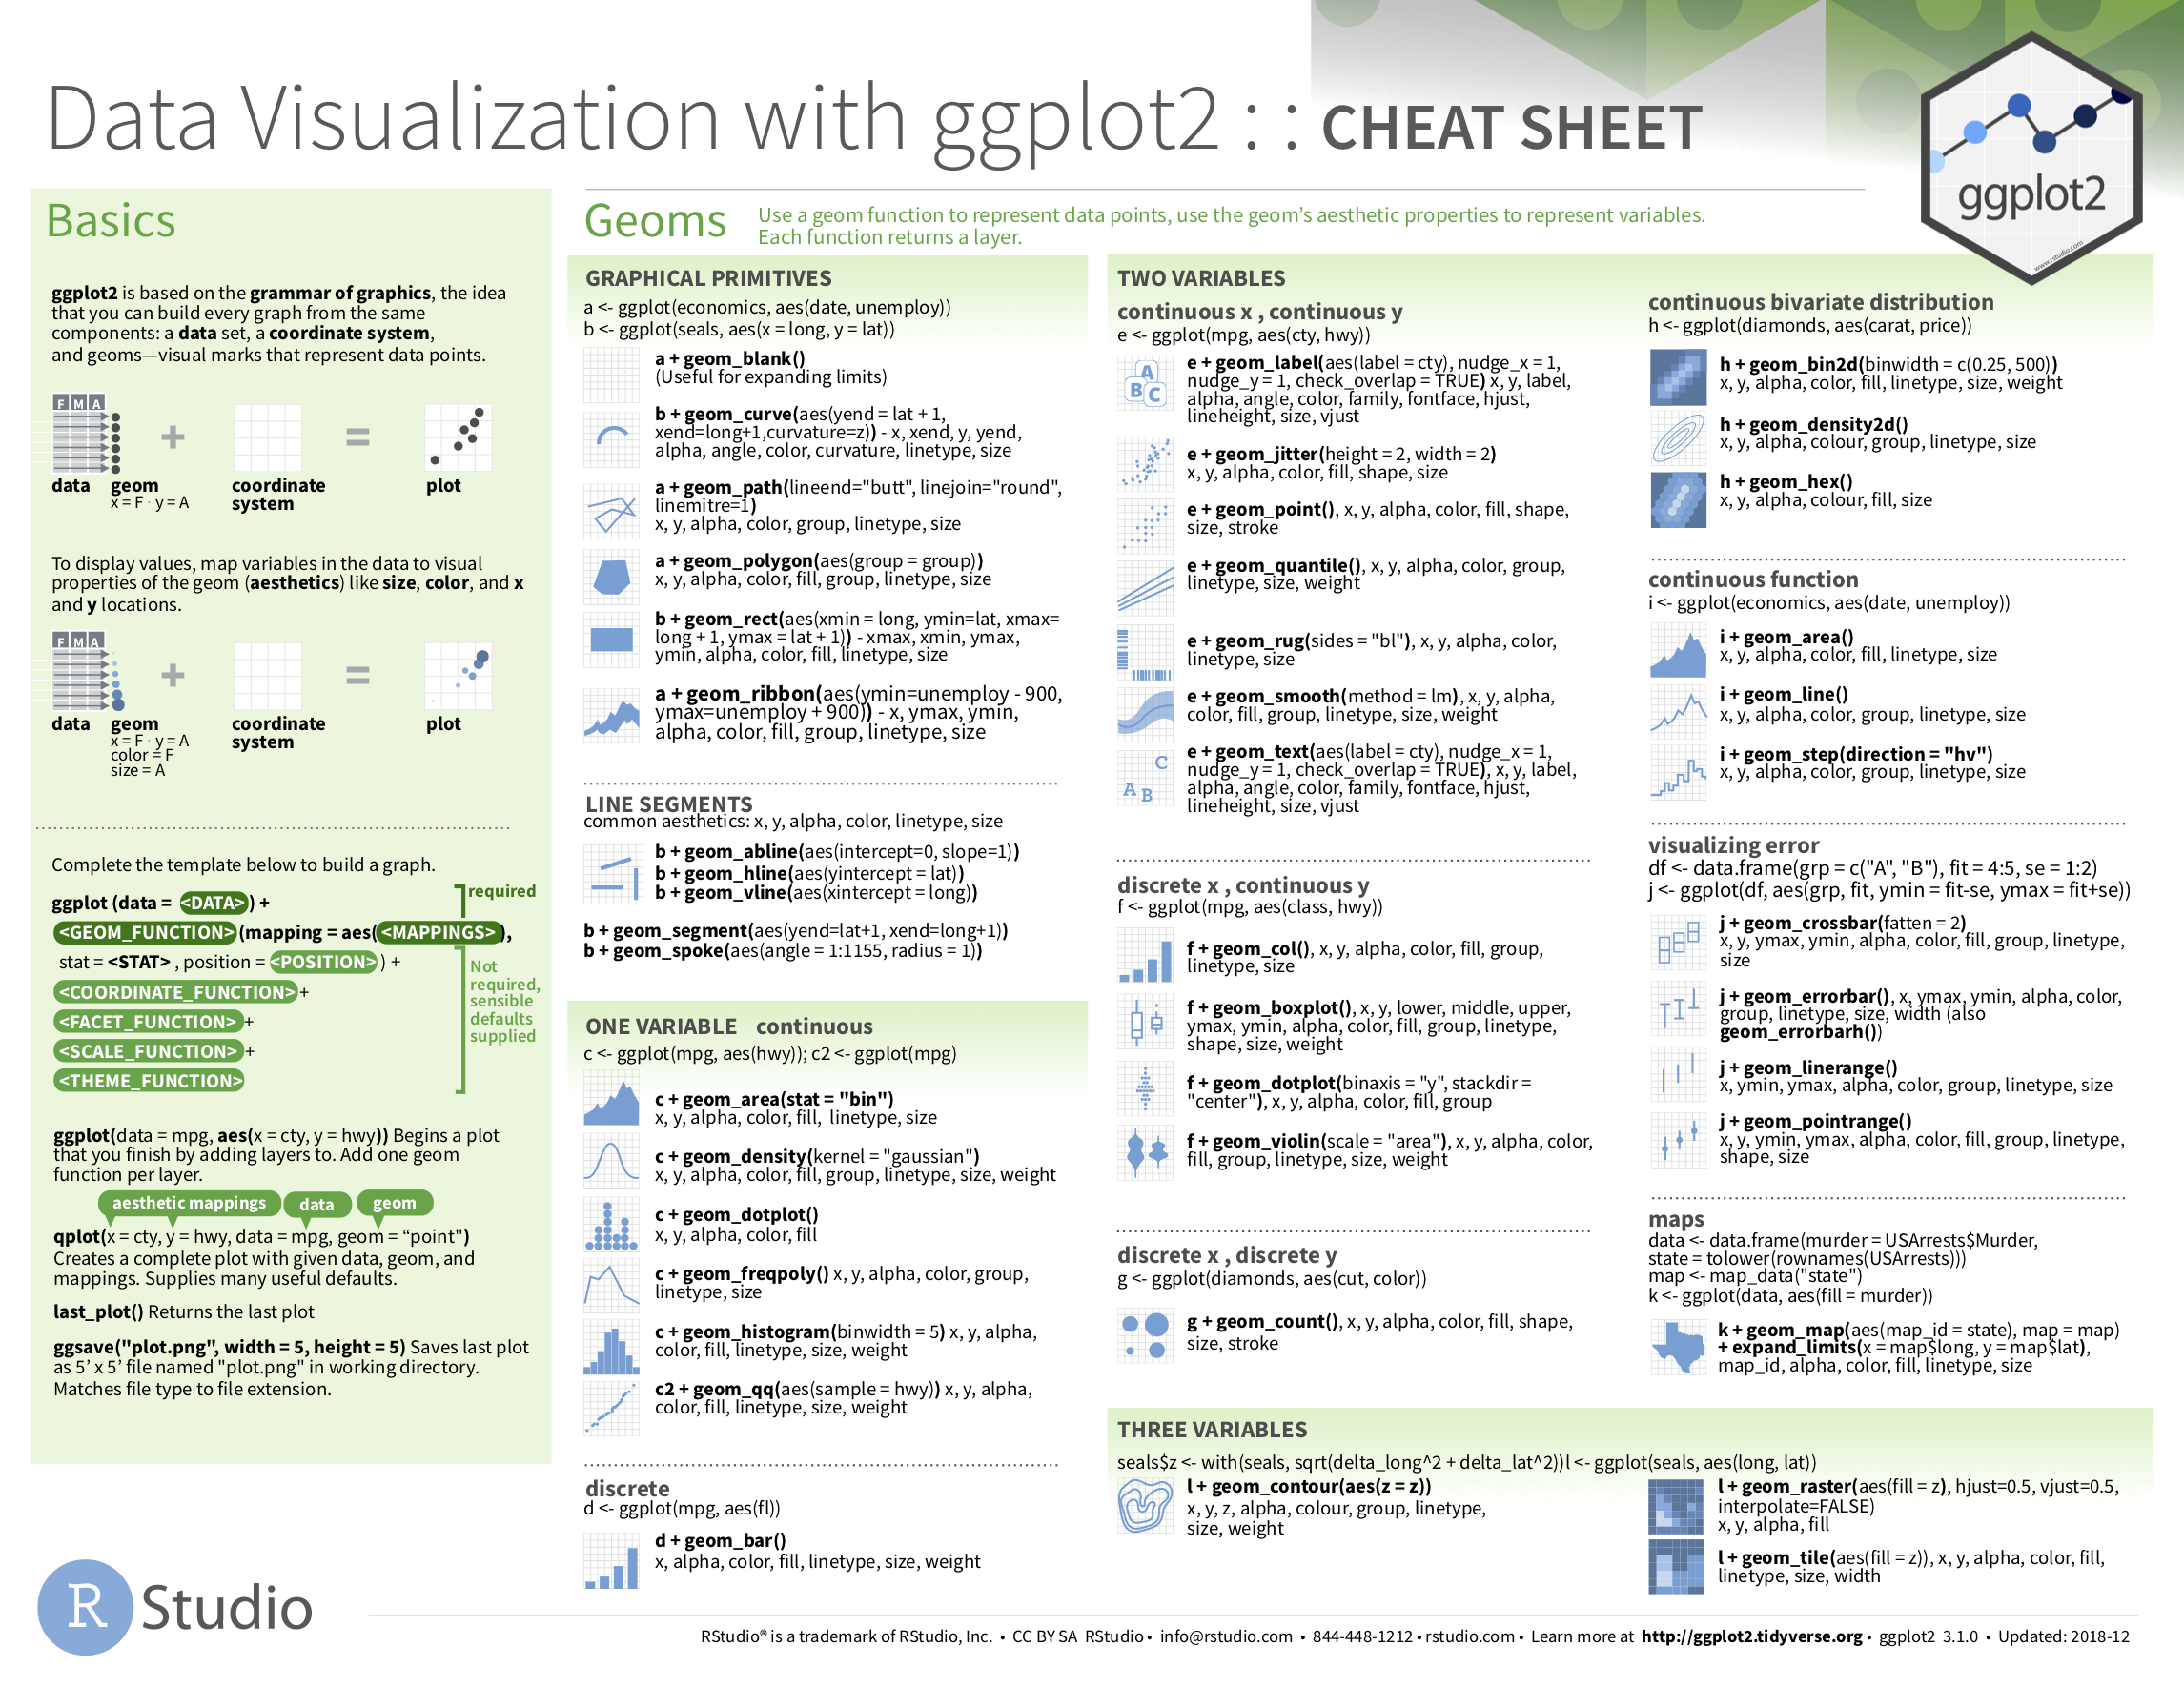 Data Visualization with ggplot2 cheatsheat